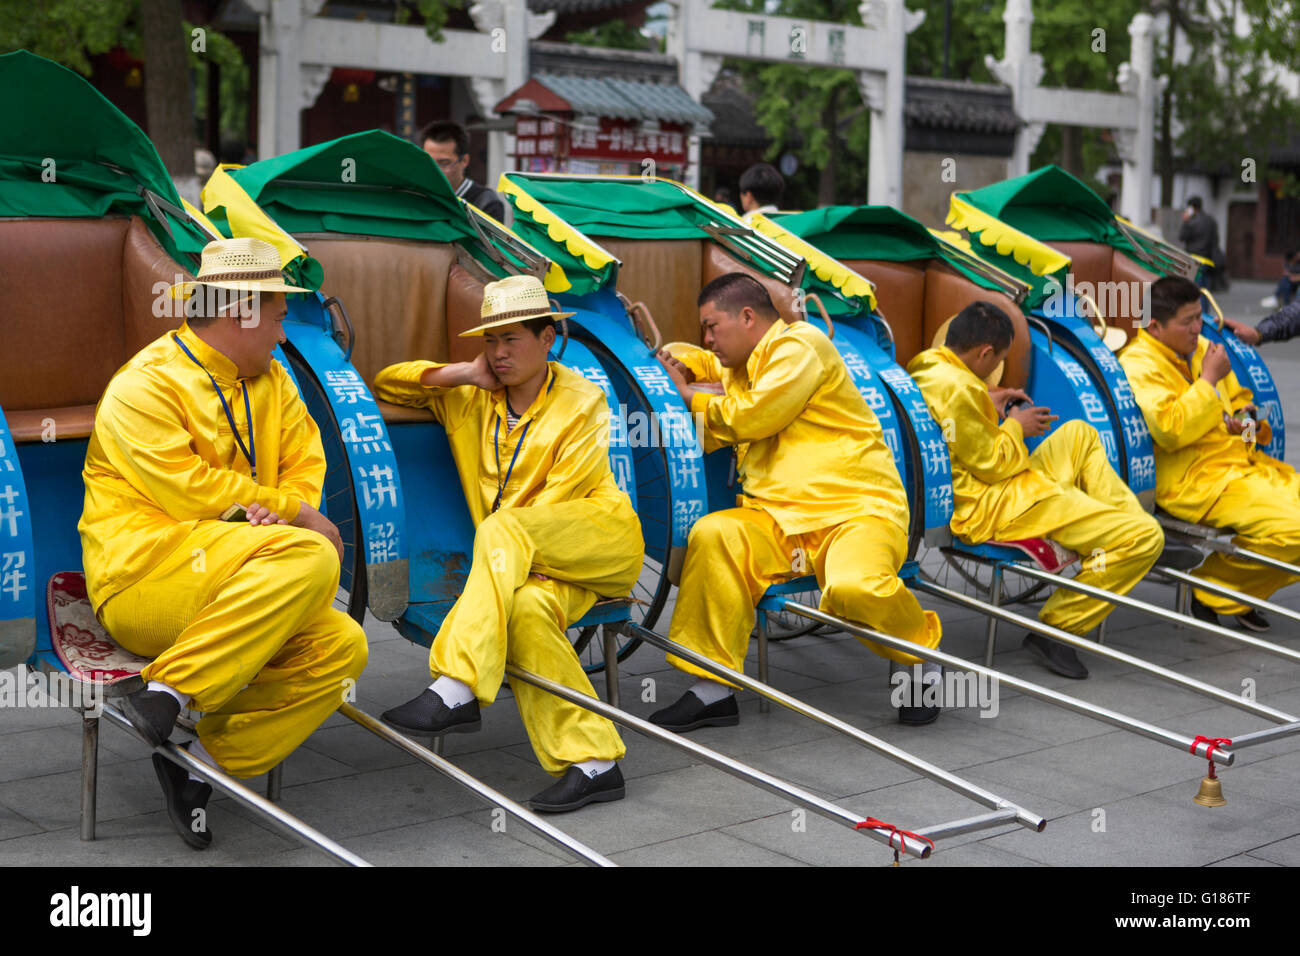 Gelb gekleidet Rikscha Fahrer eine entspannte Pause von ihrer Arbeit in der Stadt Nanjing in China ruhen Stockfoto